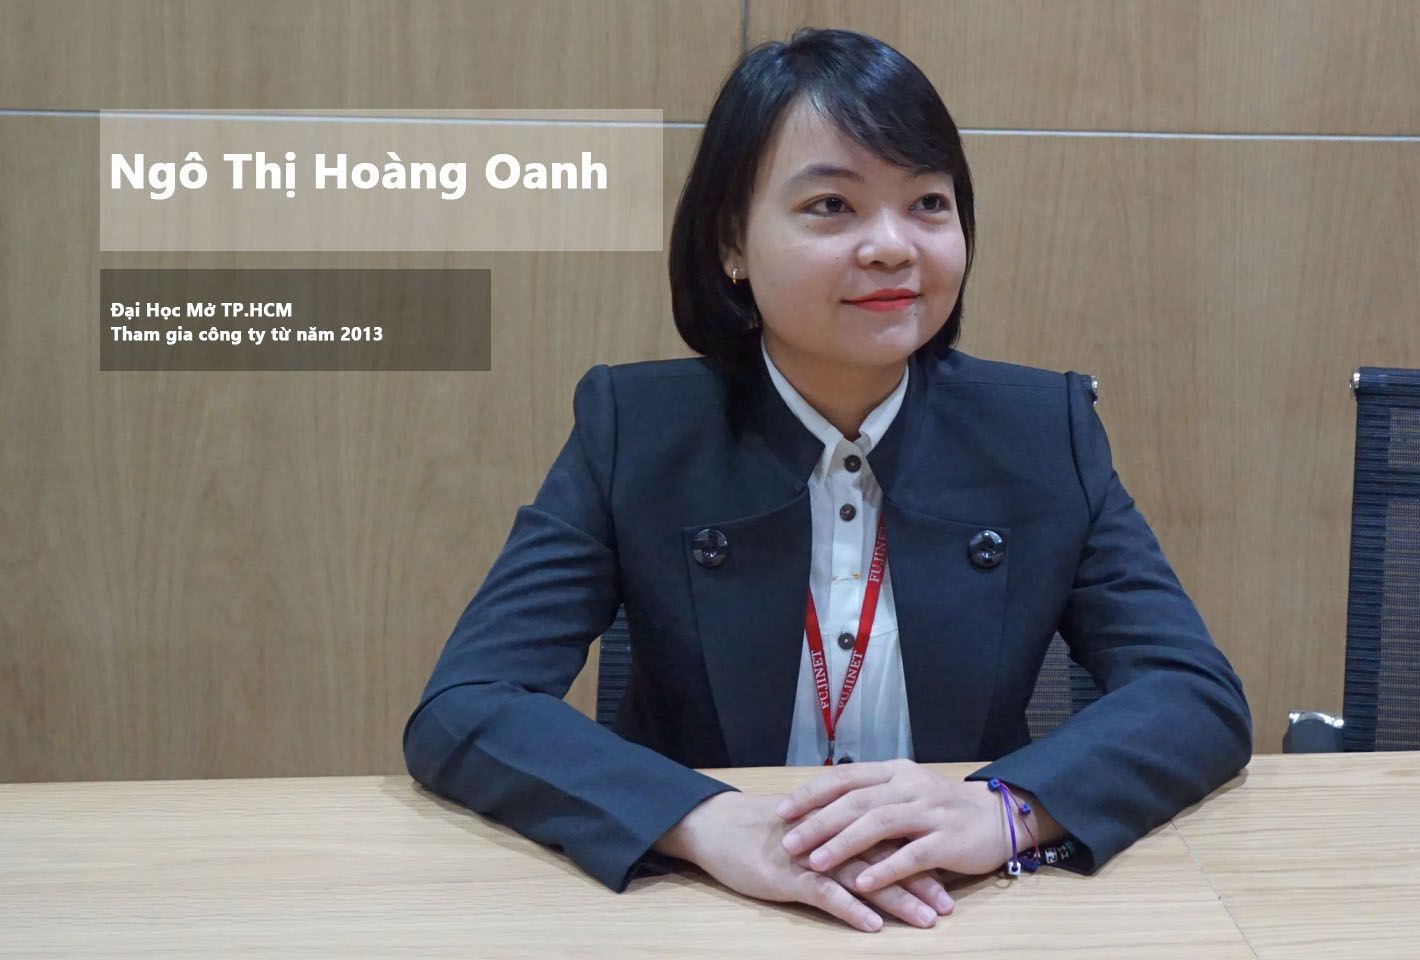 Chị Ngô Thị Hoàng Oanh cựu sinh viên trường Đại Học Mở TPHCM.